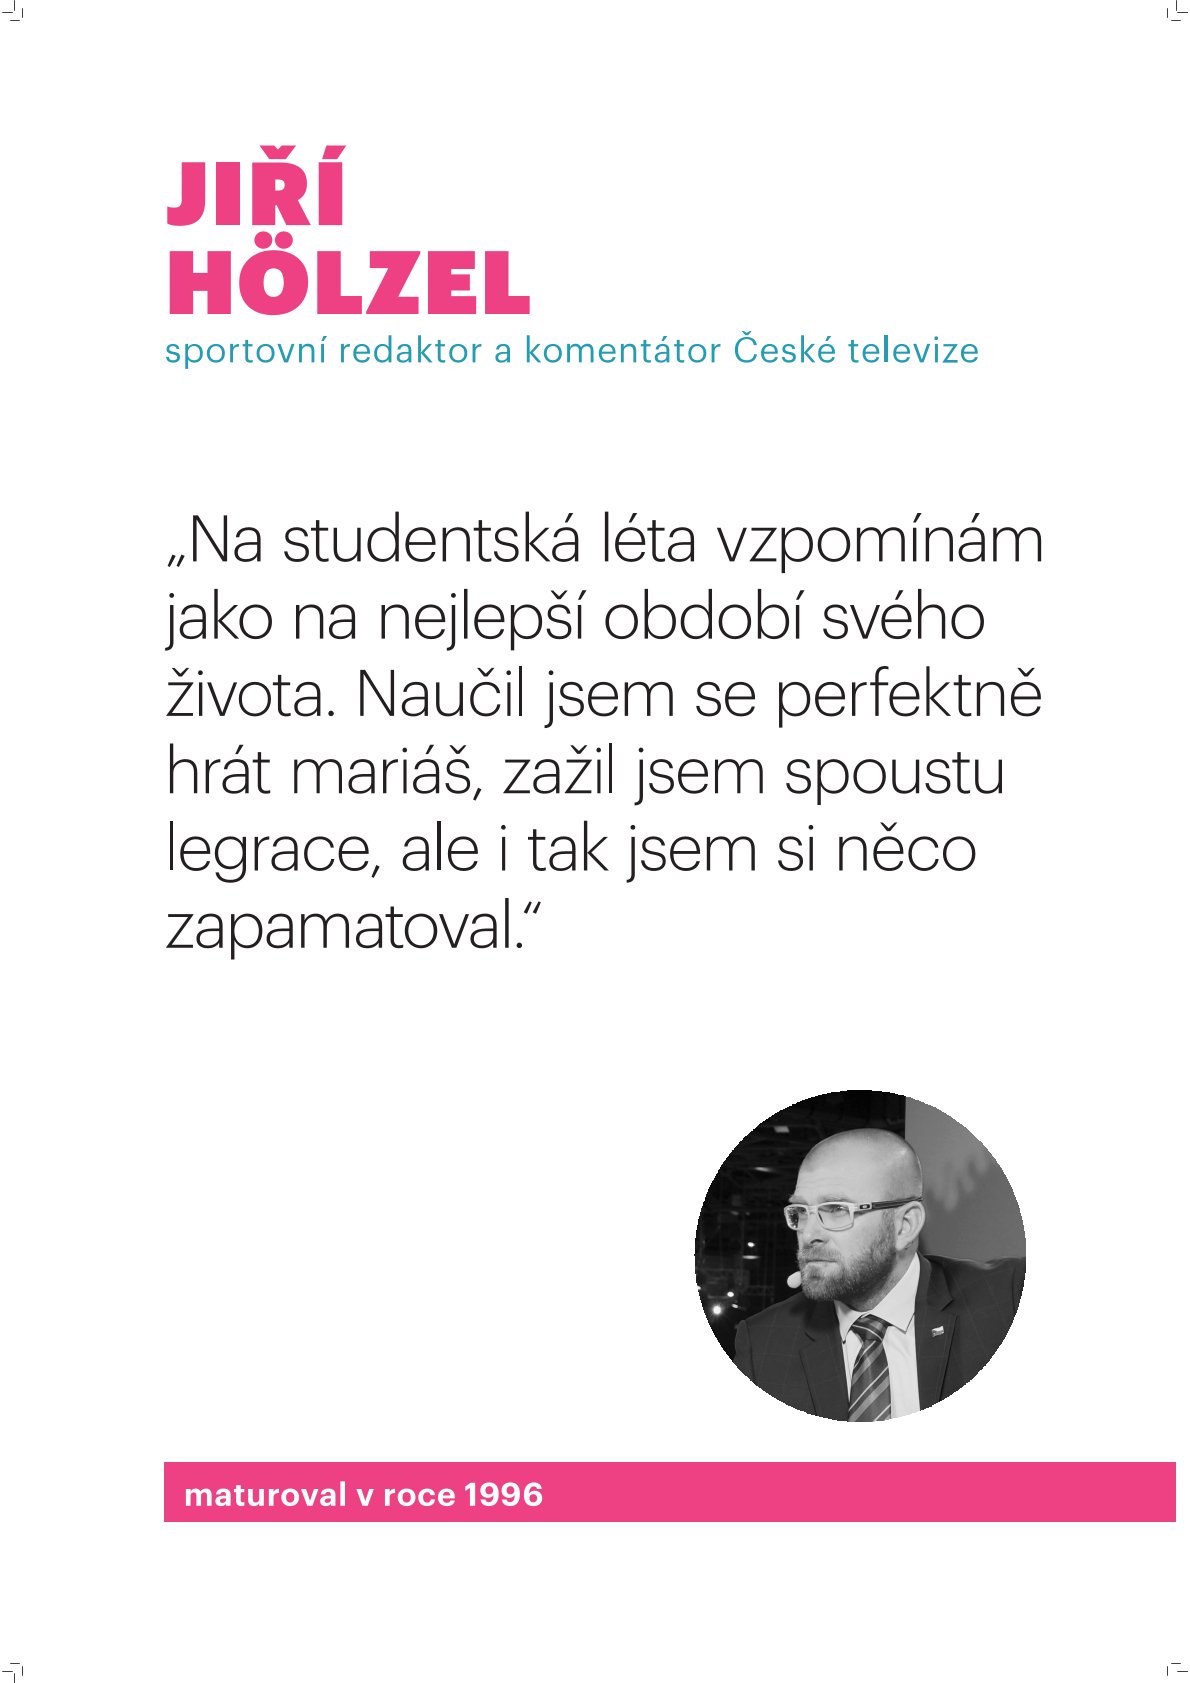 Jiří Hölzel